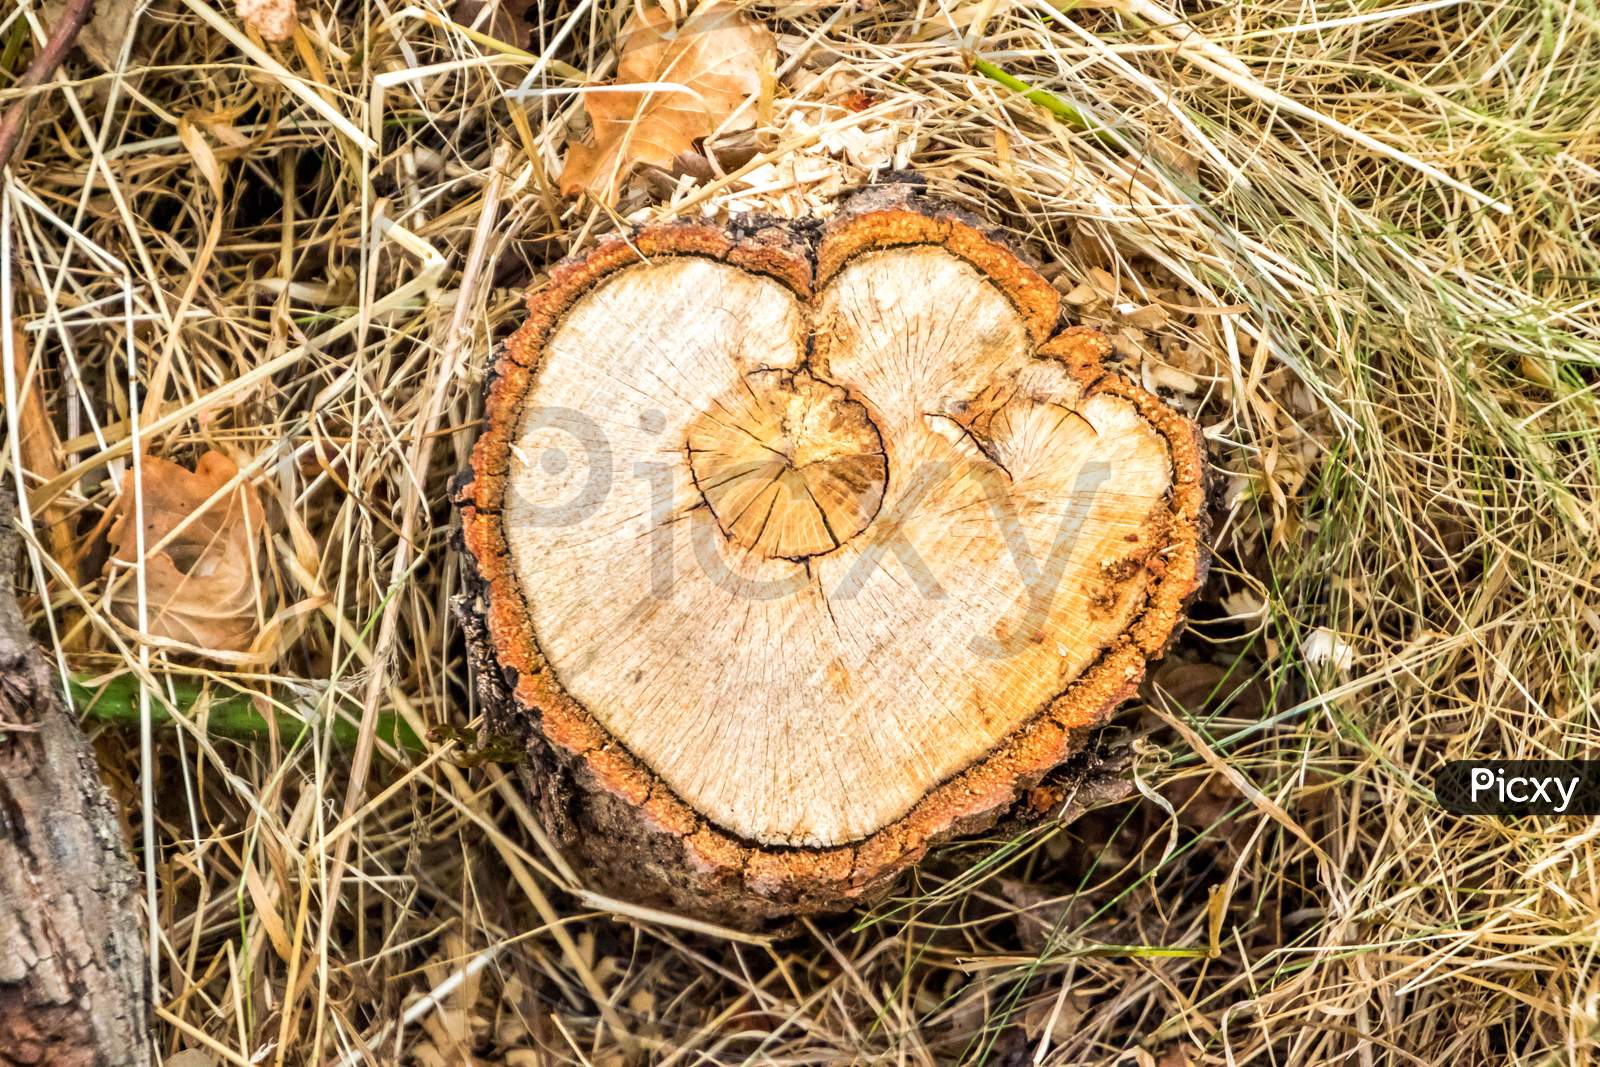 Tree Stump Heart